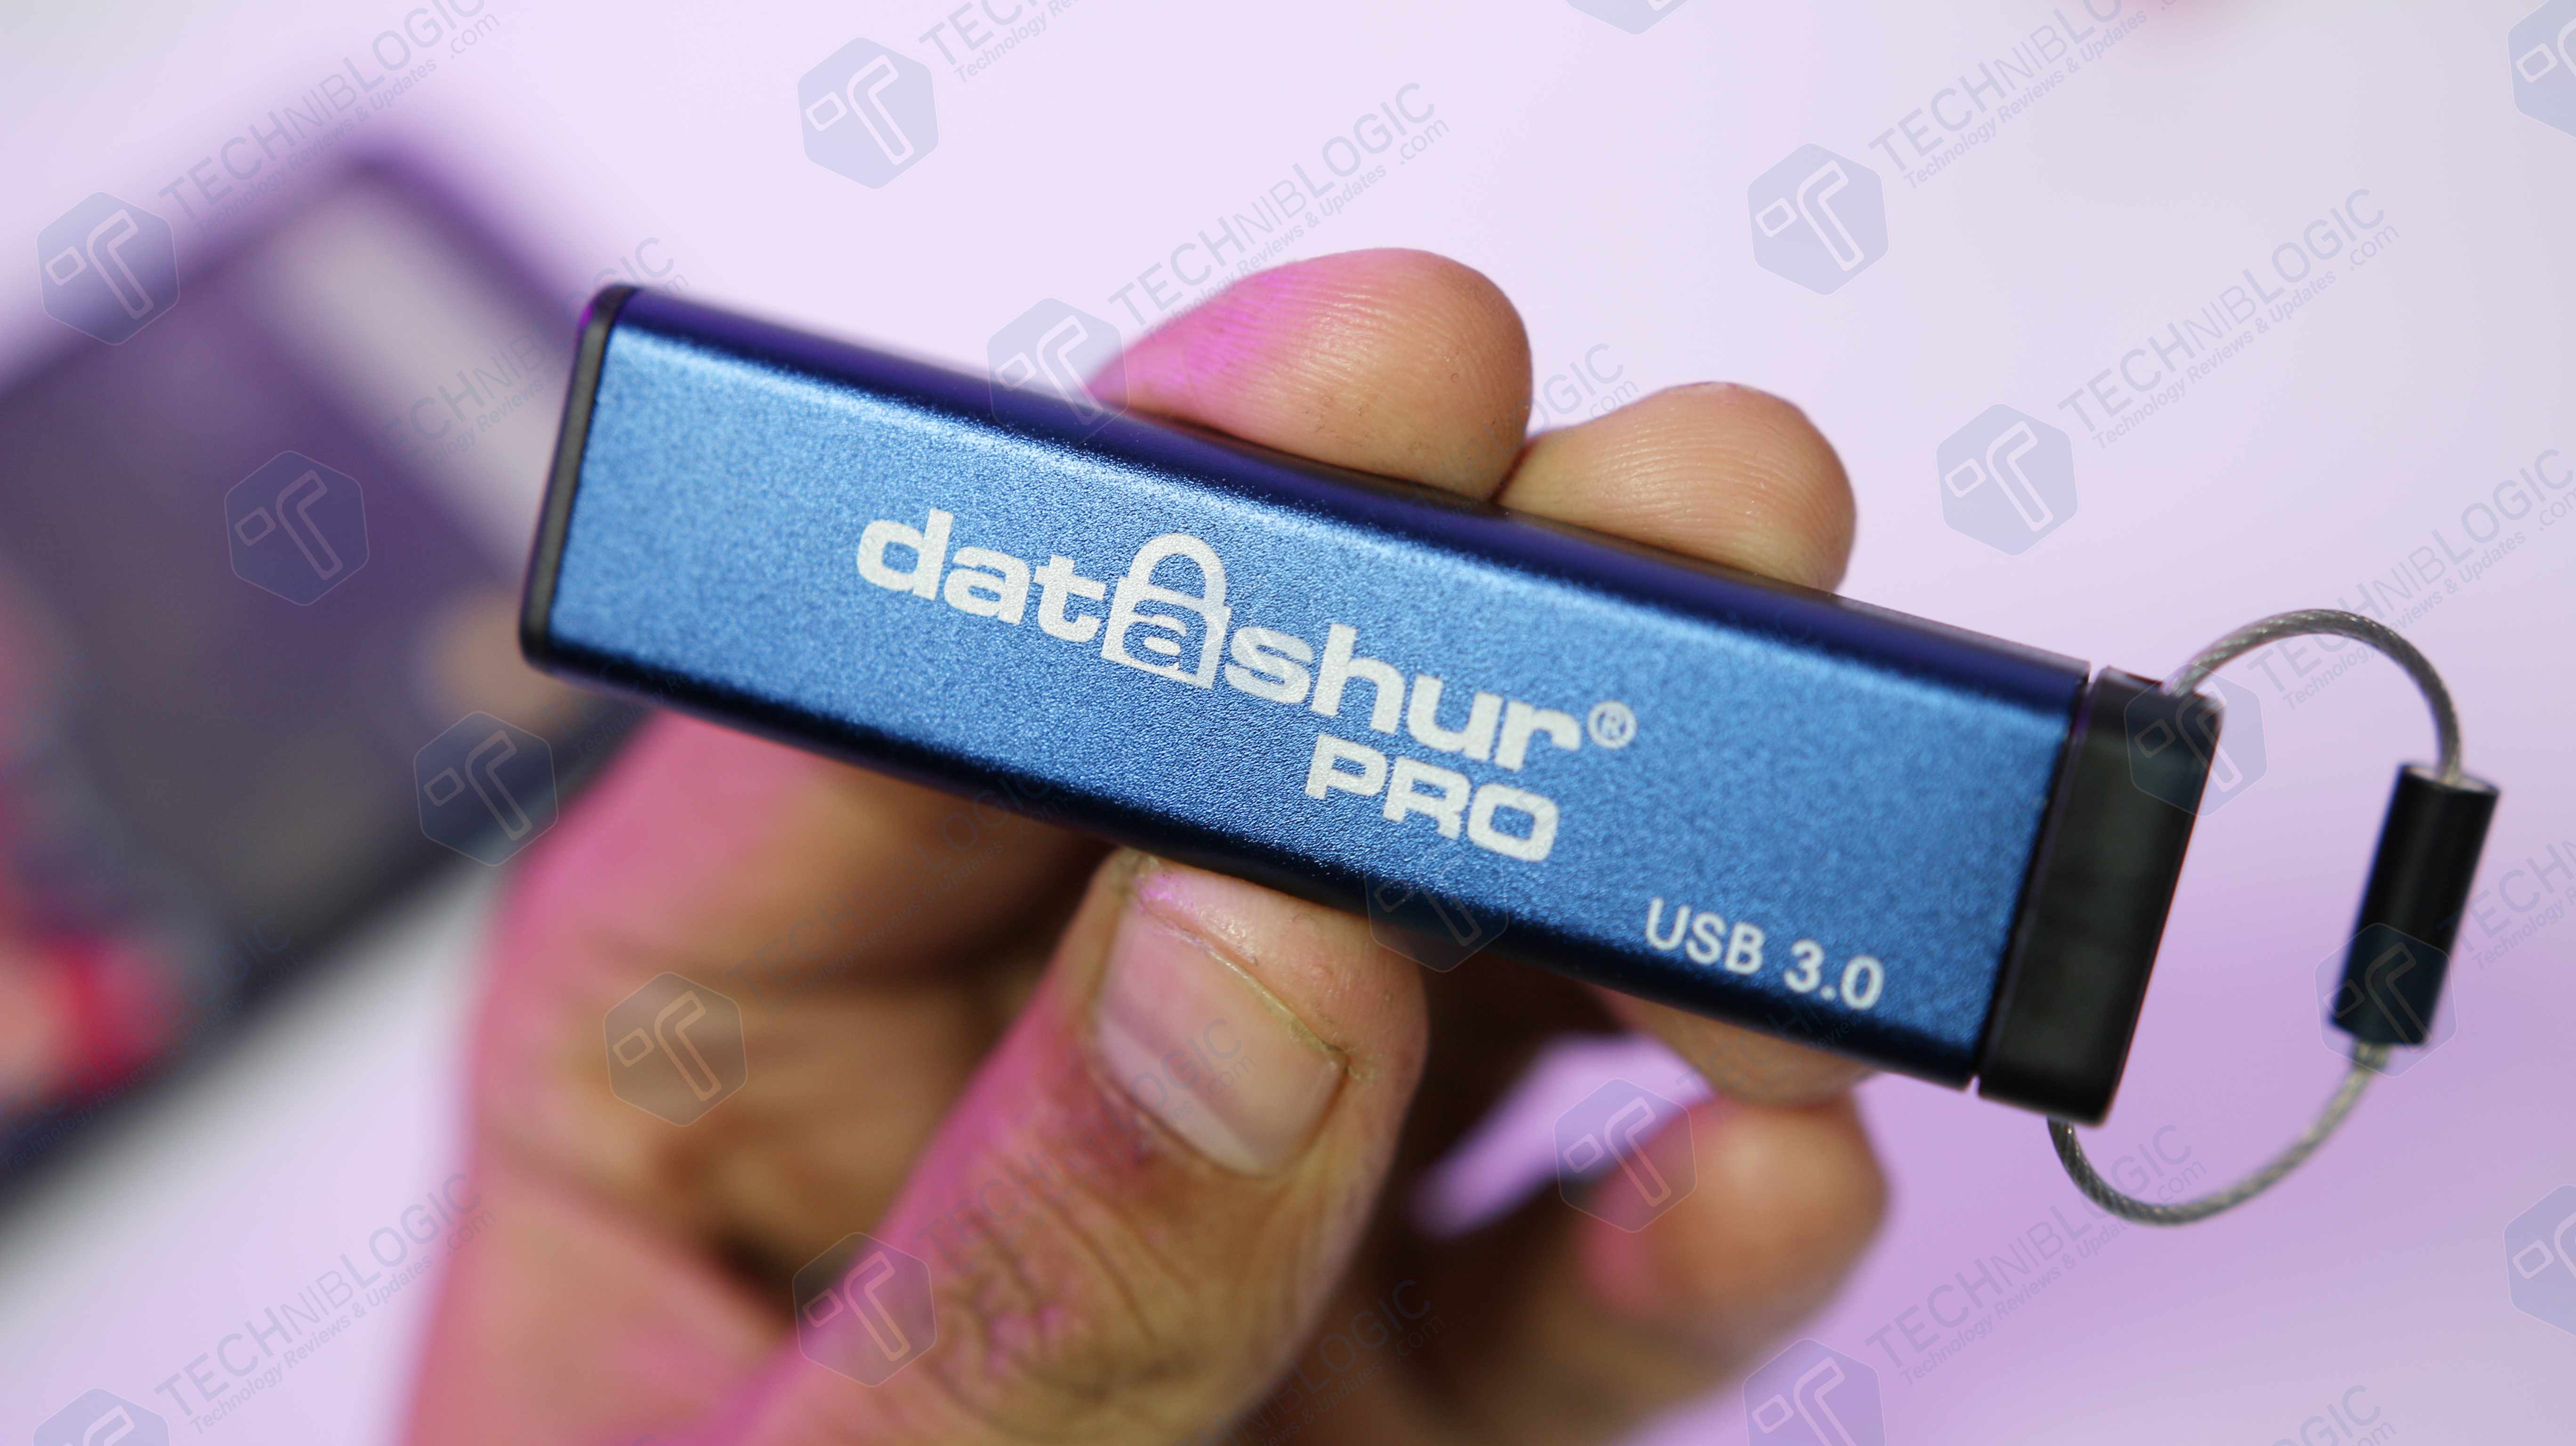 iStorage datAshur Pro USB 3.0 Flash Drive